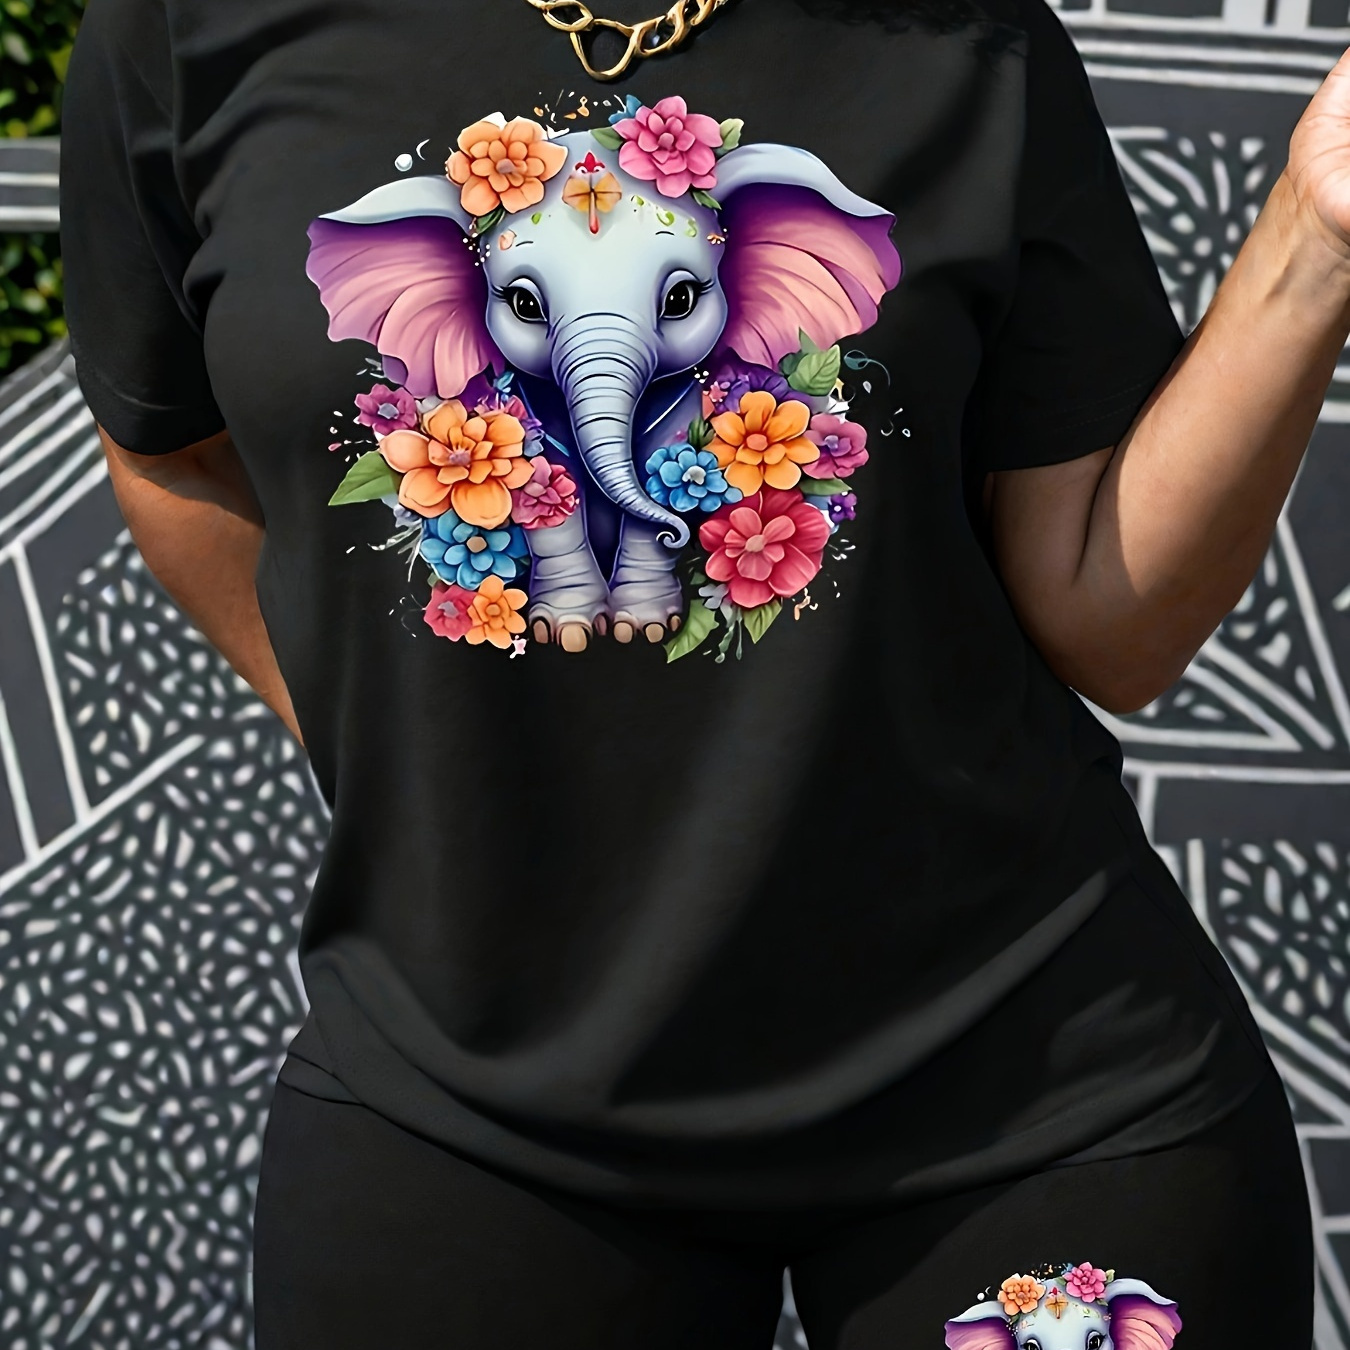 

Plus Size Floral & Elephant Print 2 Piece Set, Short Sleeve T-shirt & Short Leggings, Women's Plus Size Clothing